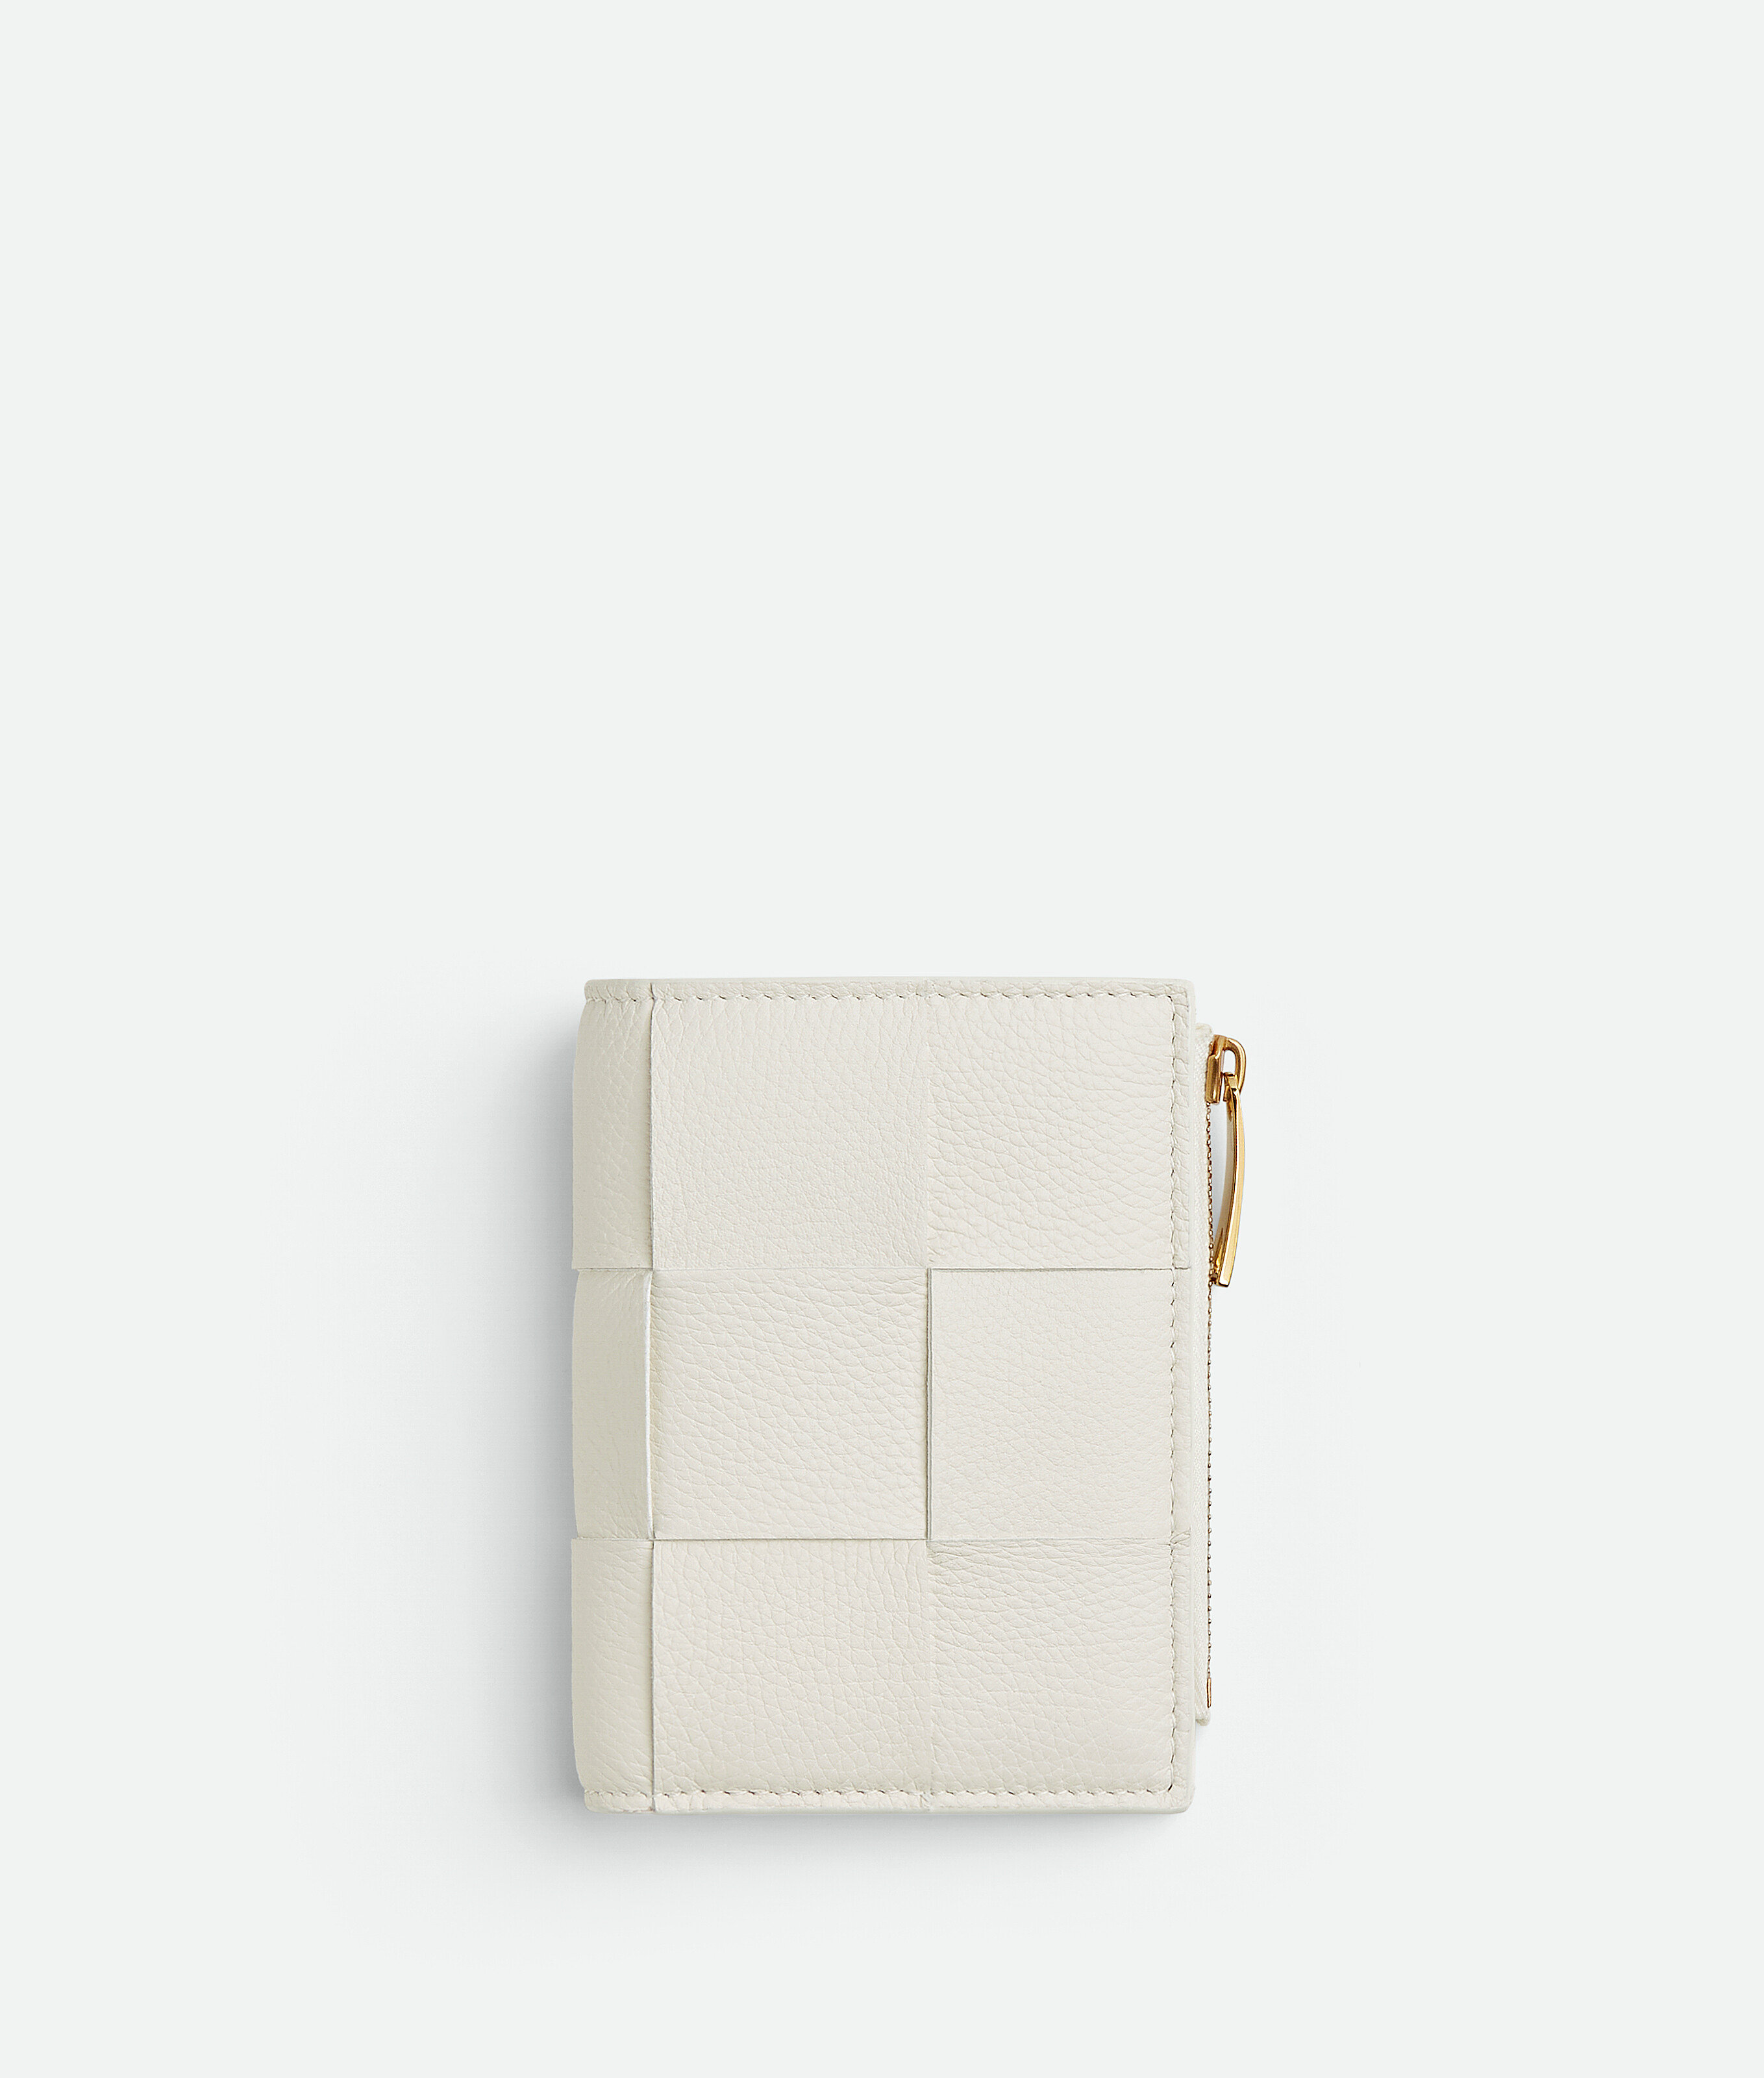 Compact zip wallet in soft grained calfskin